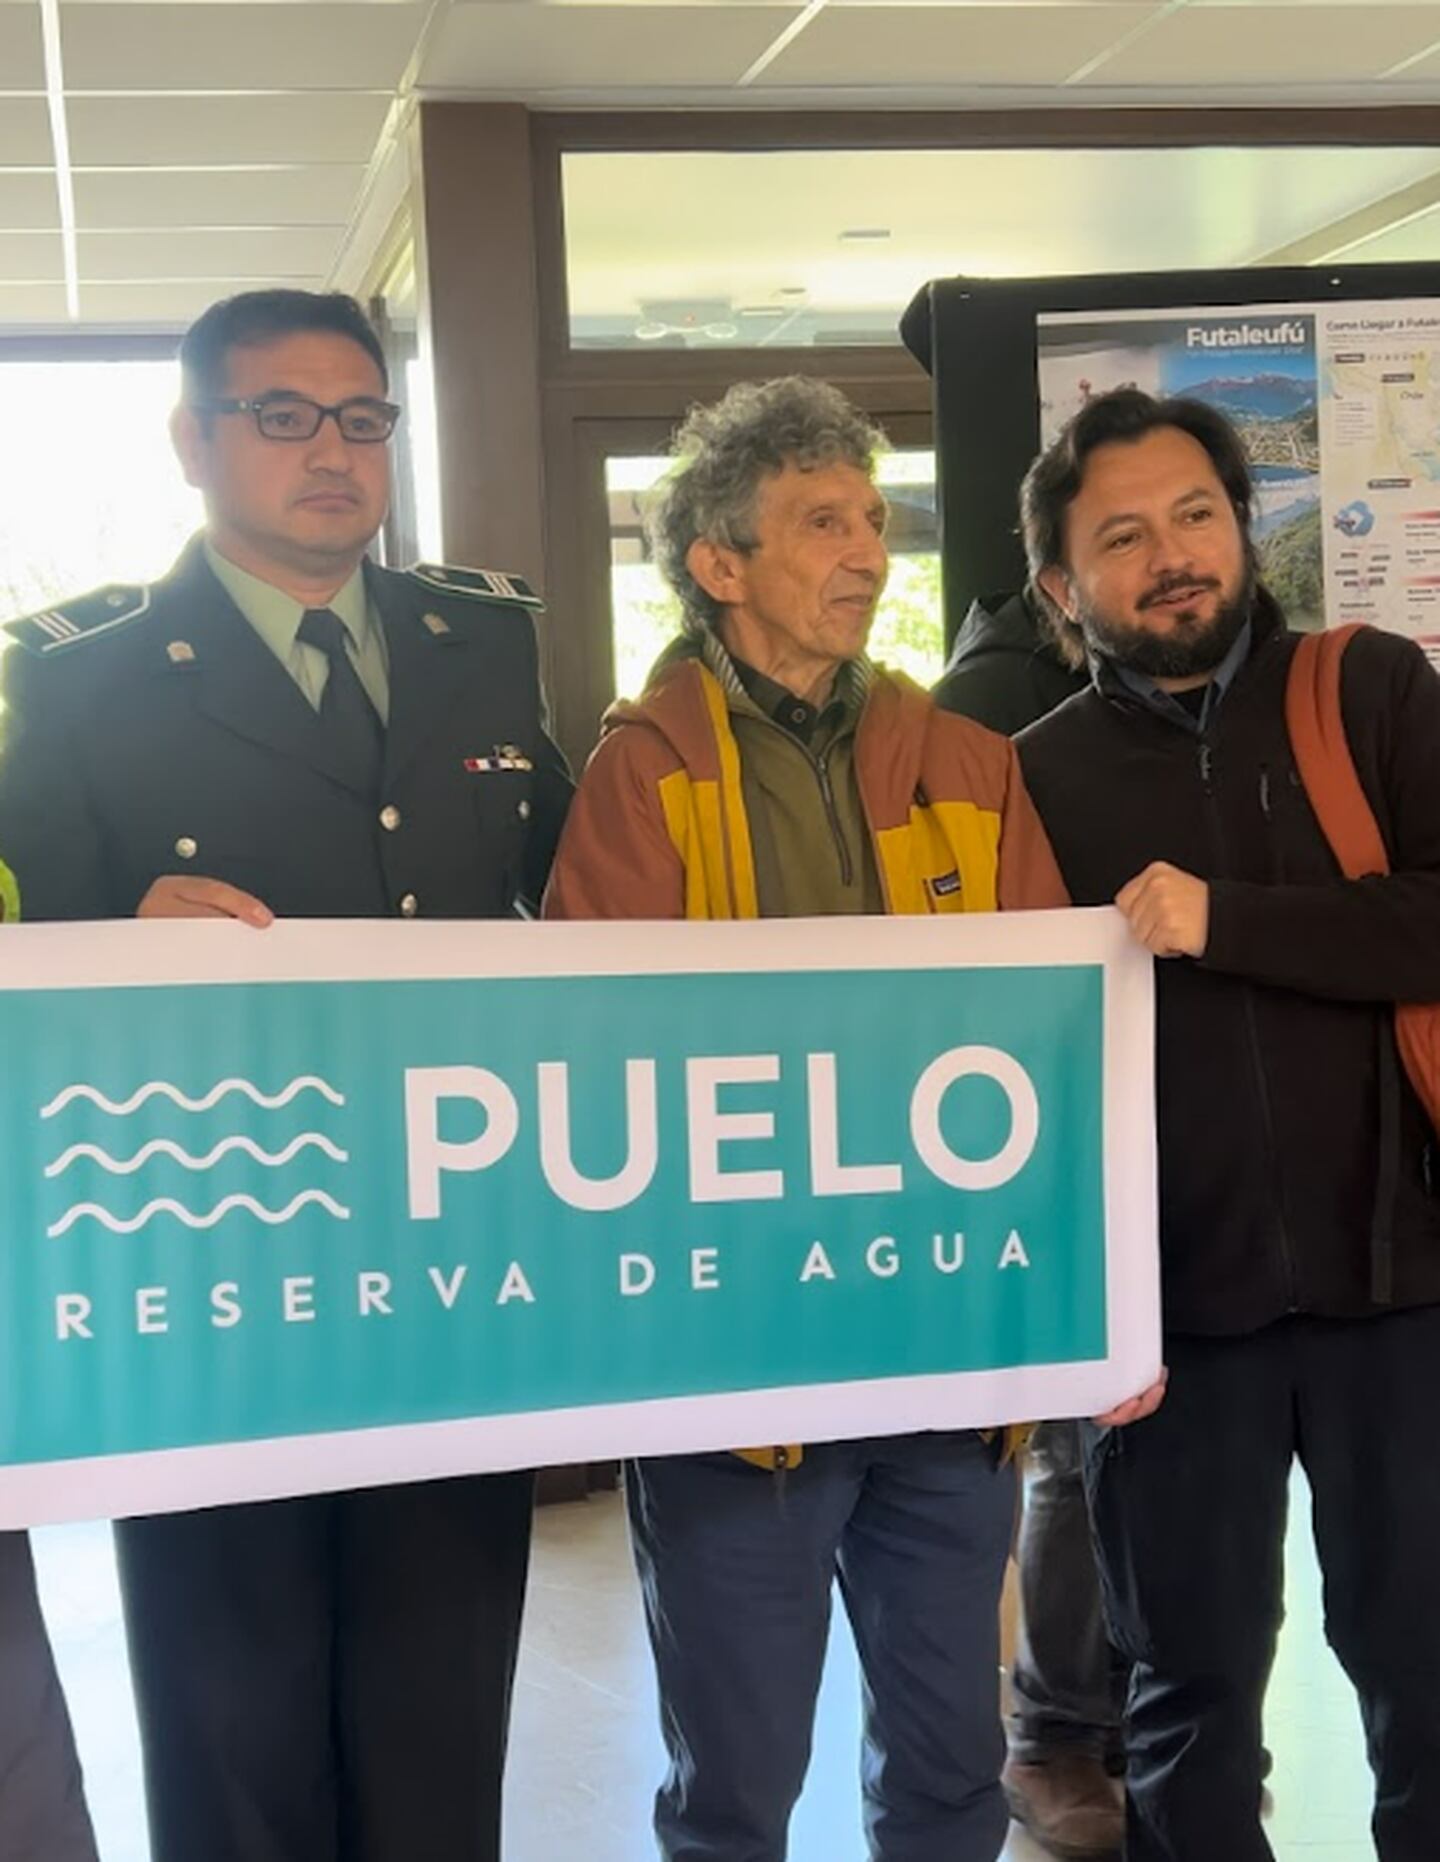 Los ríos Puelo y Futaleufú serán los primeros caudales protegidos en Chile. Fotografia de Vive Chile